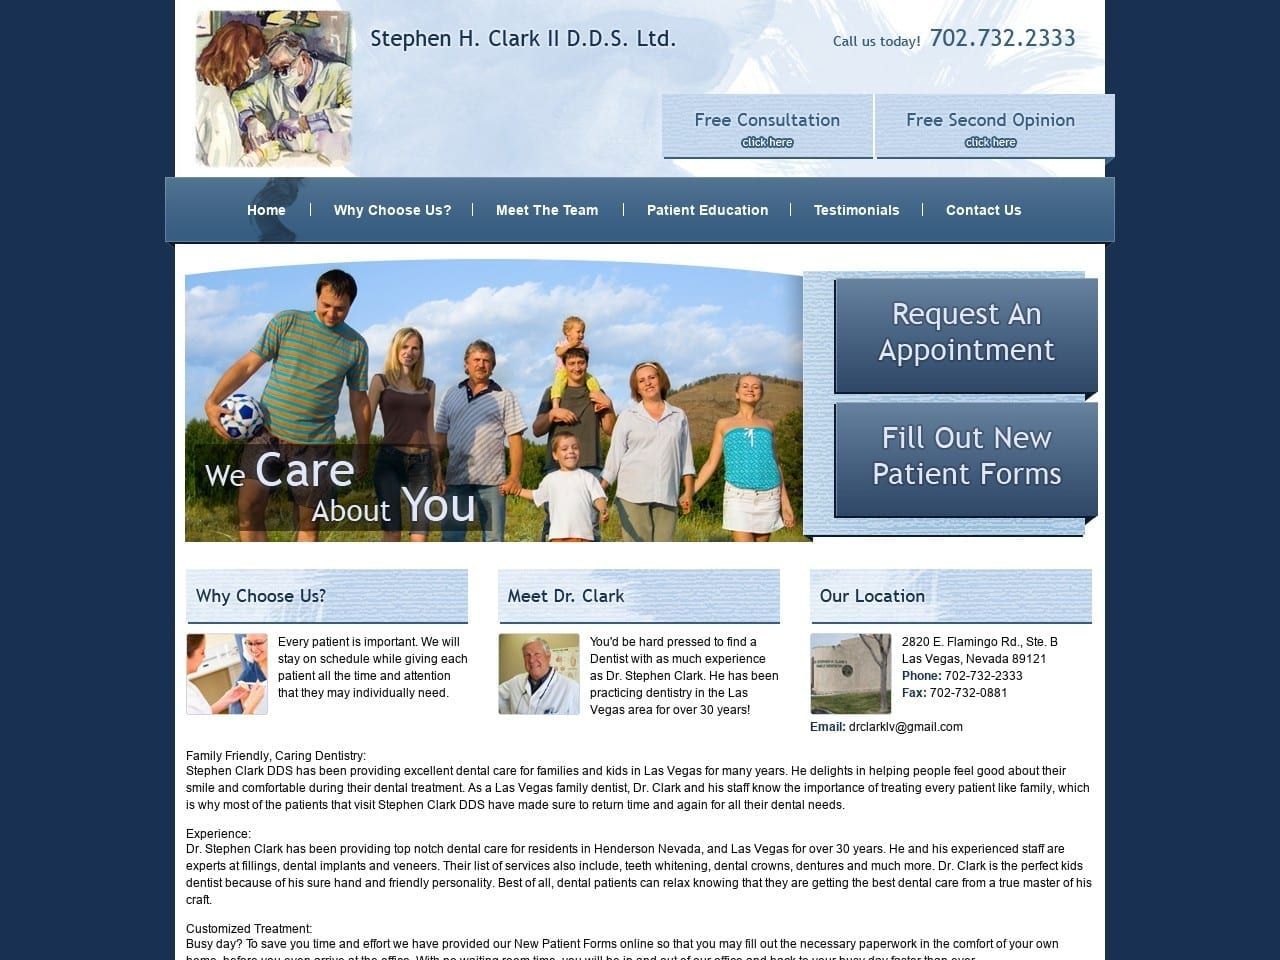 Dr. Stephen Clark DDS Website Screenshot from stephenclarkddslv.com